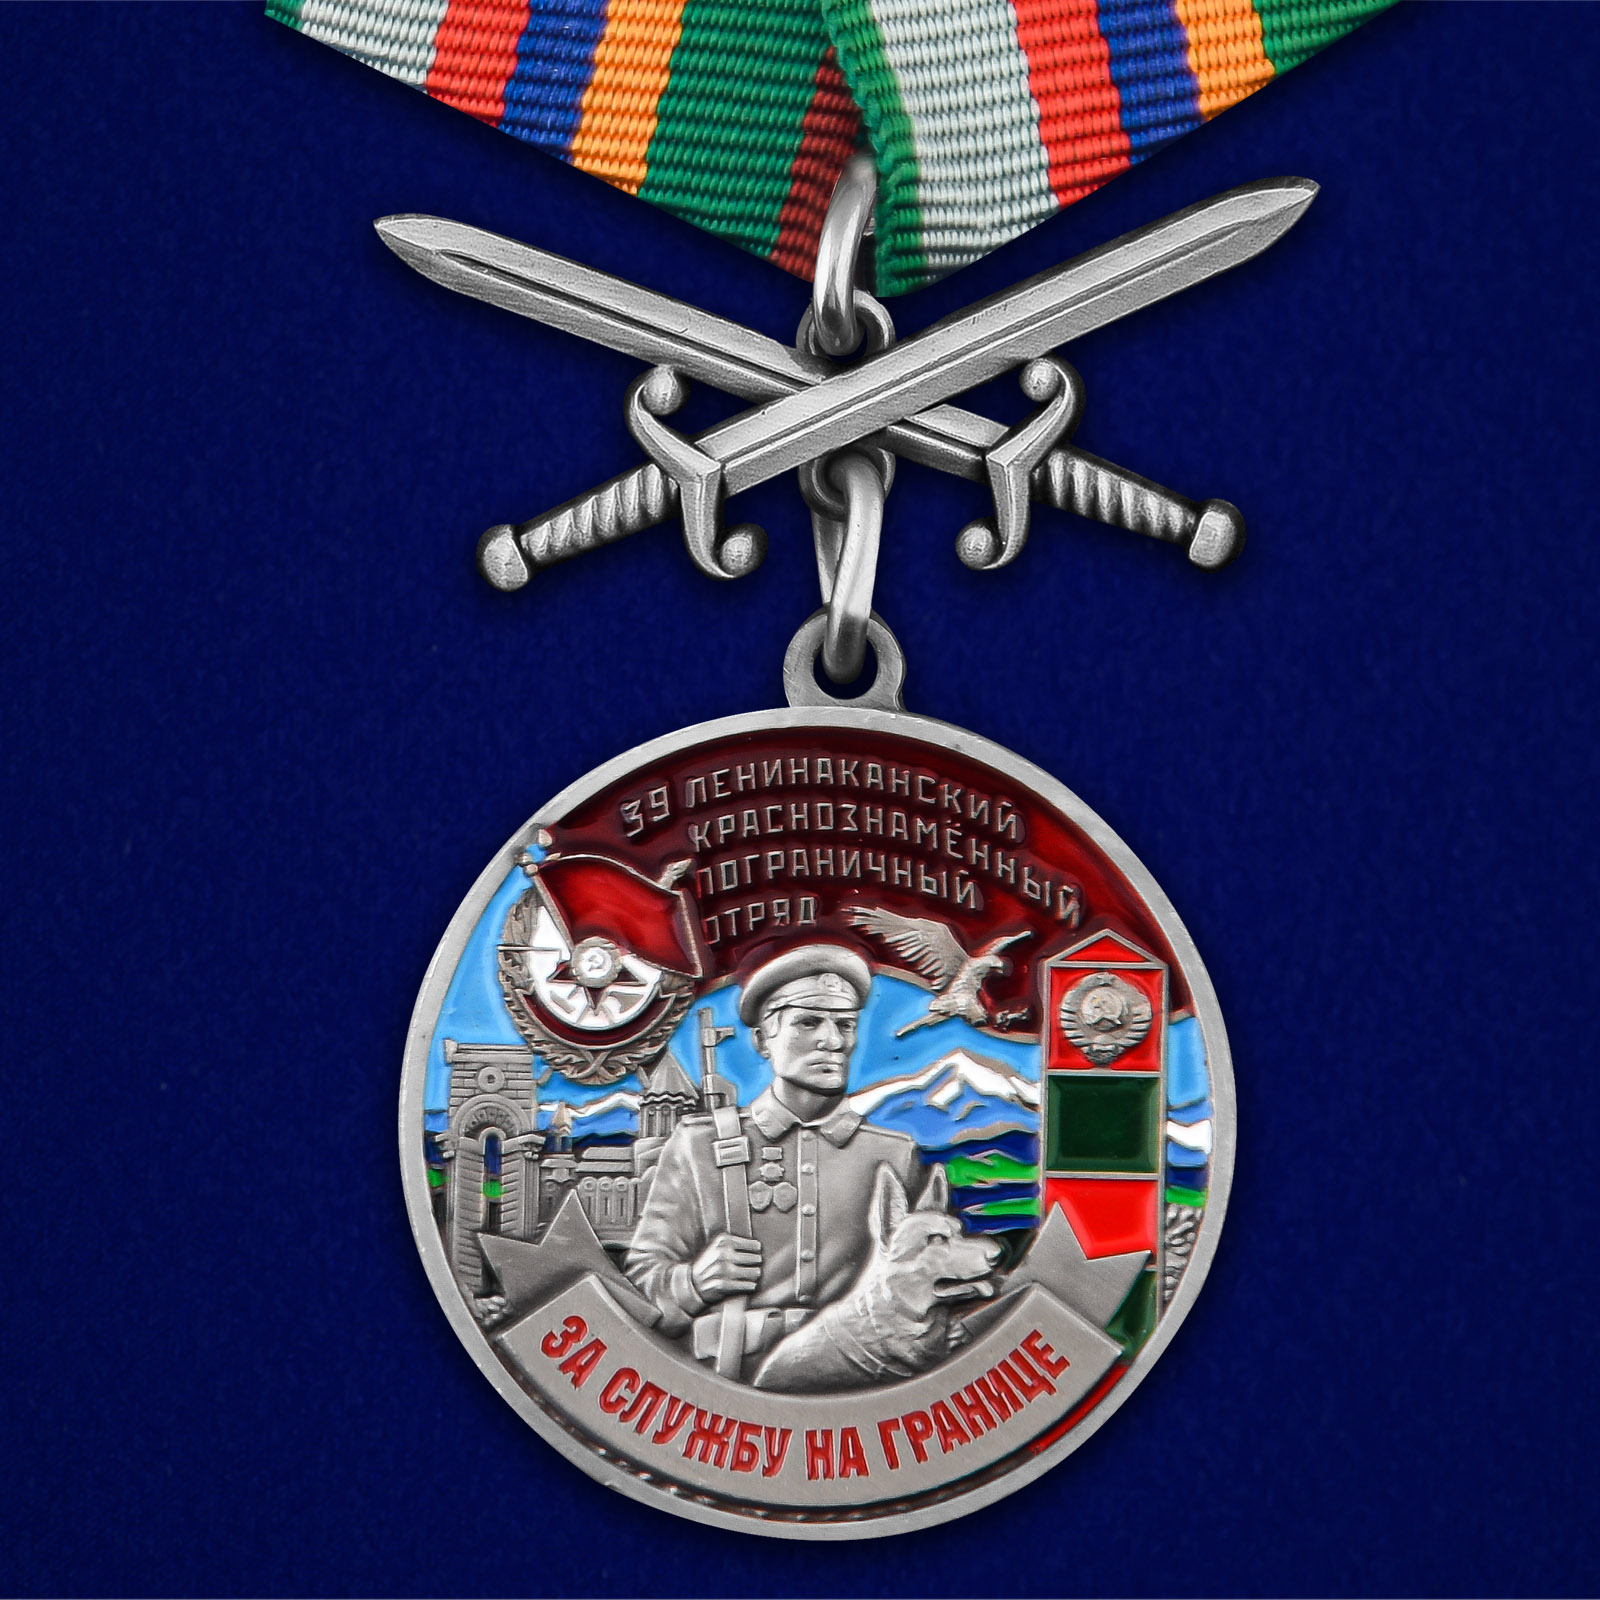 Купить медаль За службу в Ленинаканском пограничном отряде онлайн